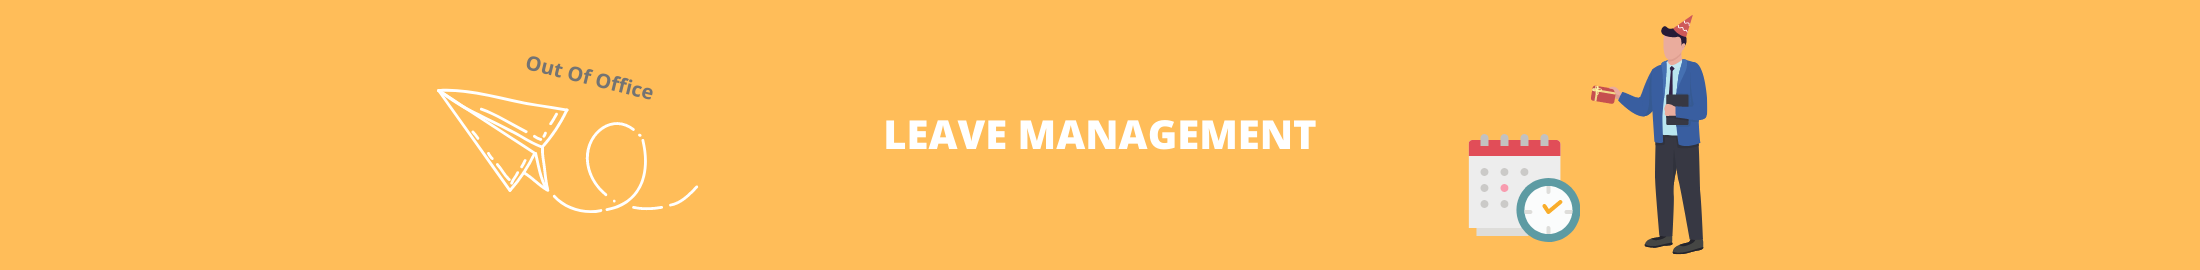 Leave Management Banner